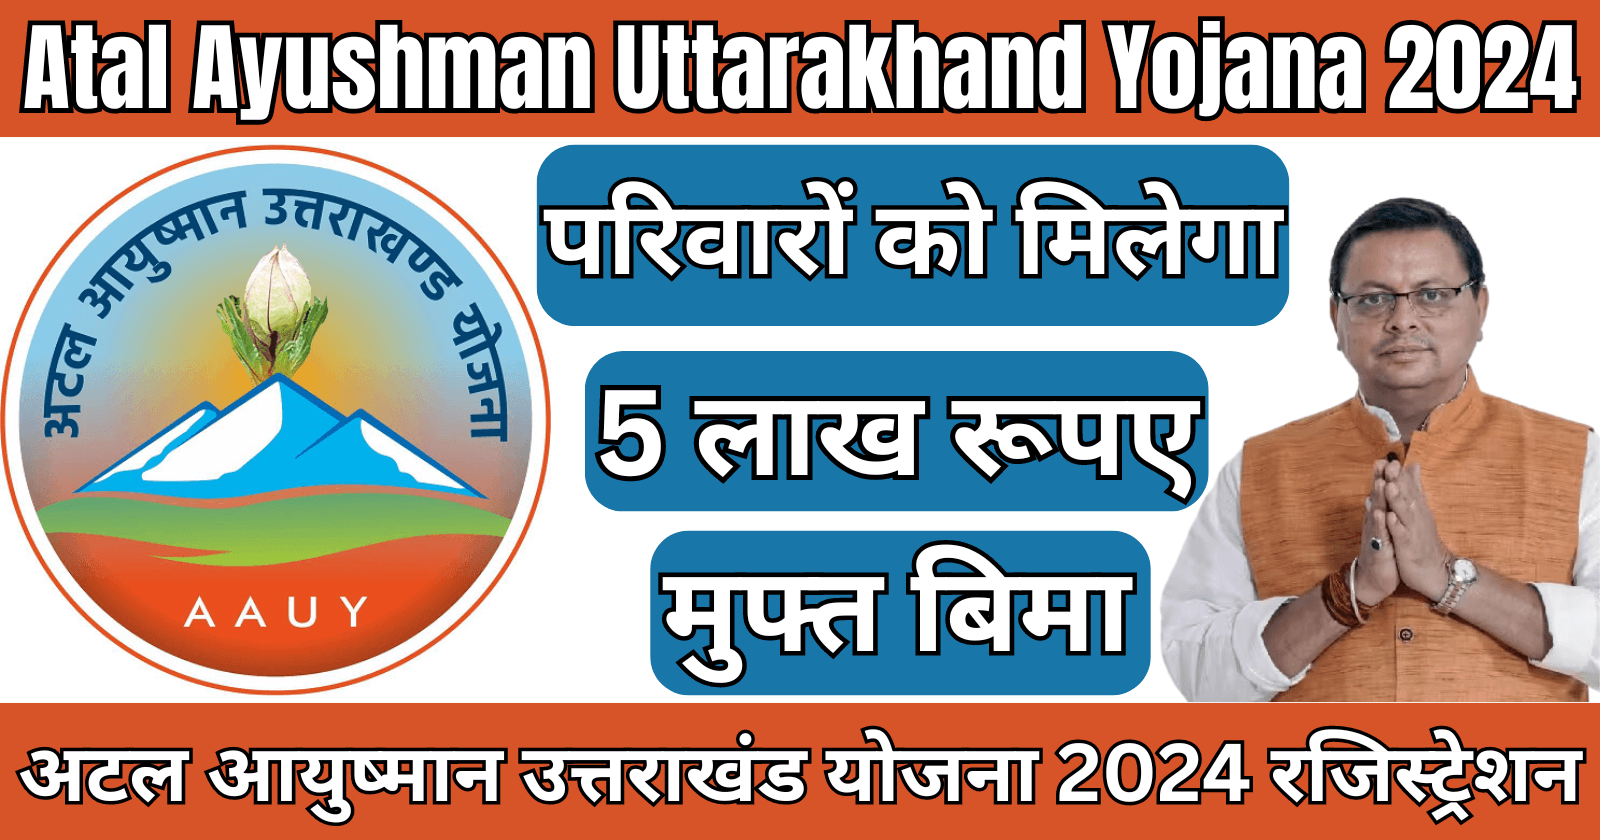 Atal Ayushman Uttarakhand Yojana 2024